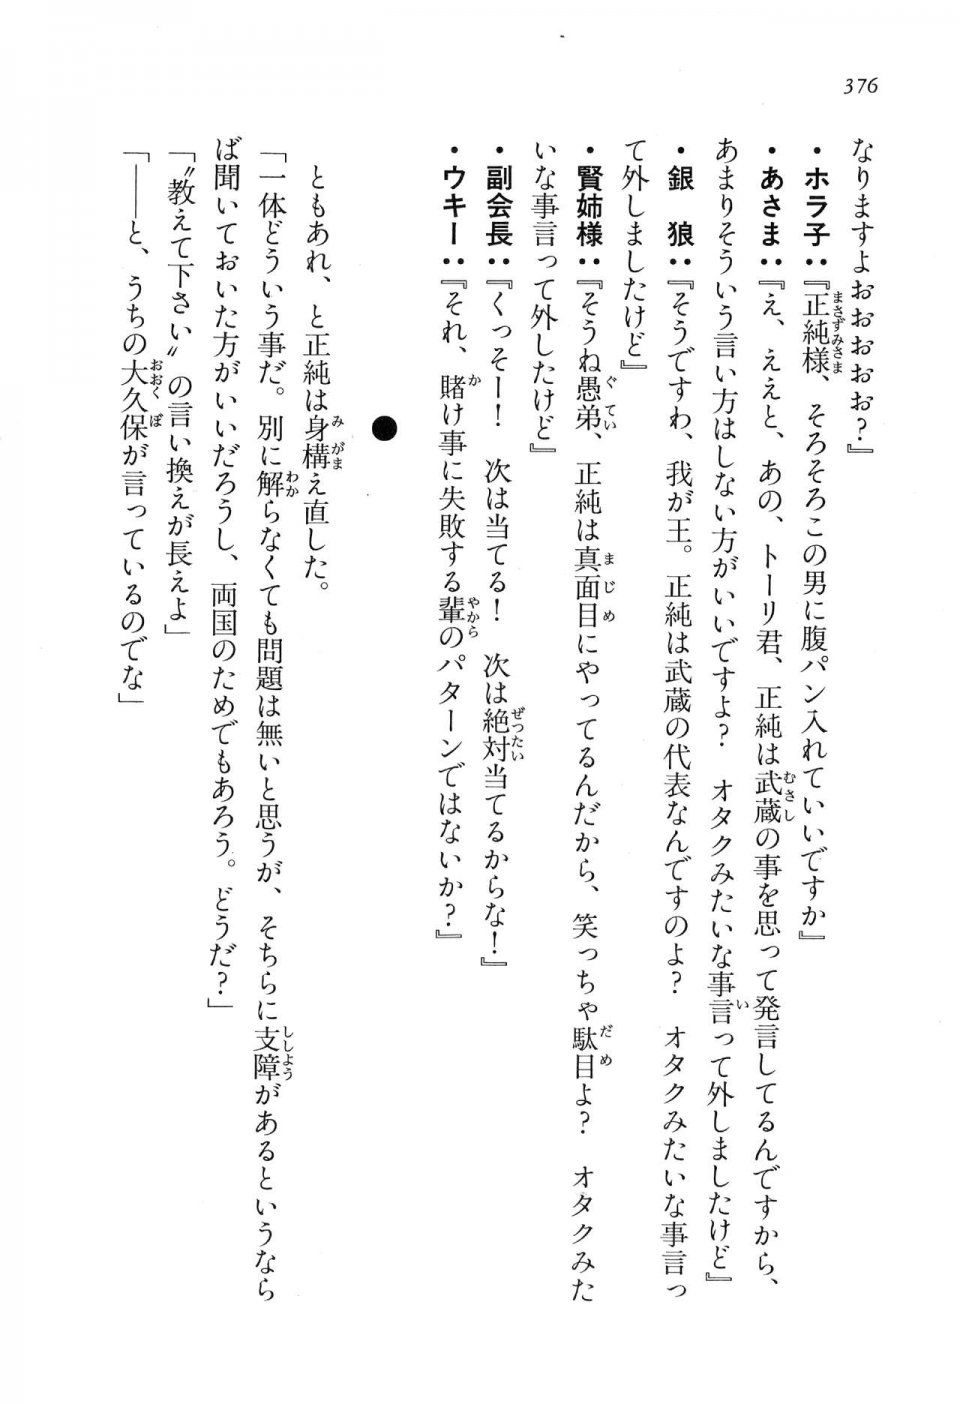 Kyoukai Senjou no Horizon LN Vol 16(7A) - Photo #376